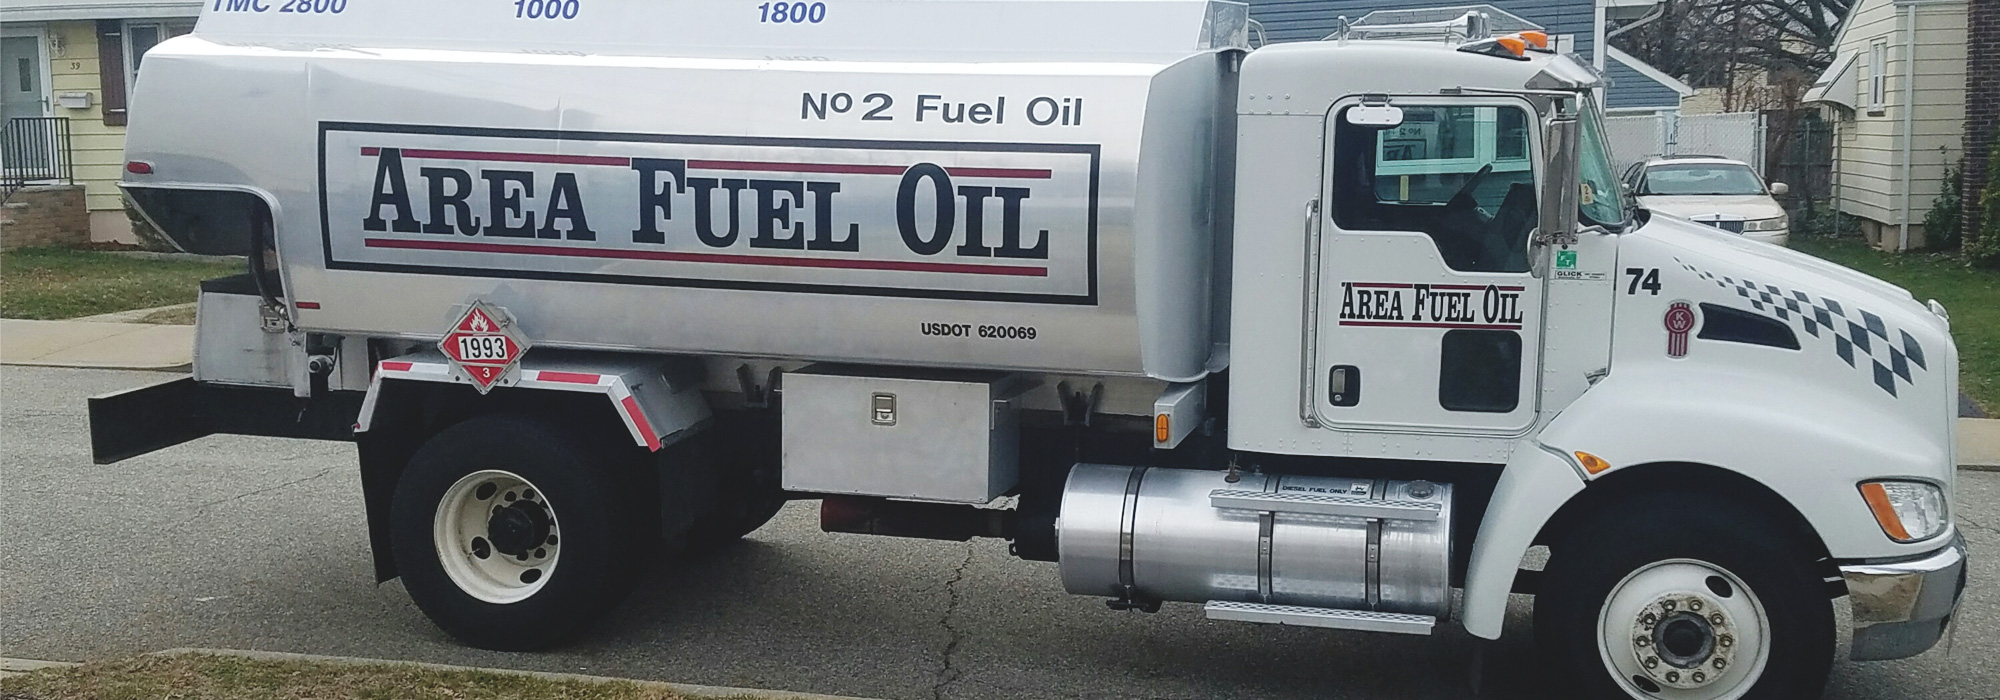 Area Fuel Oil